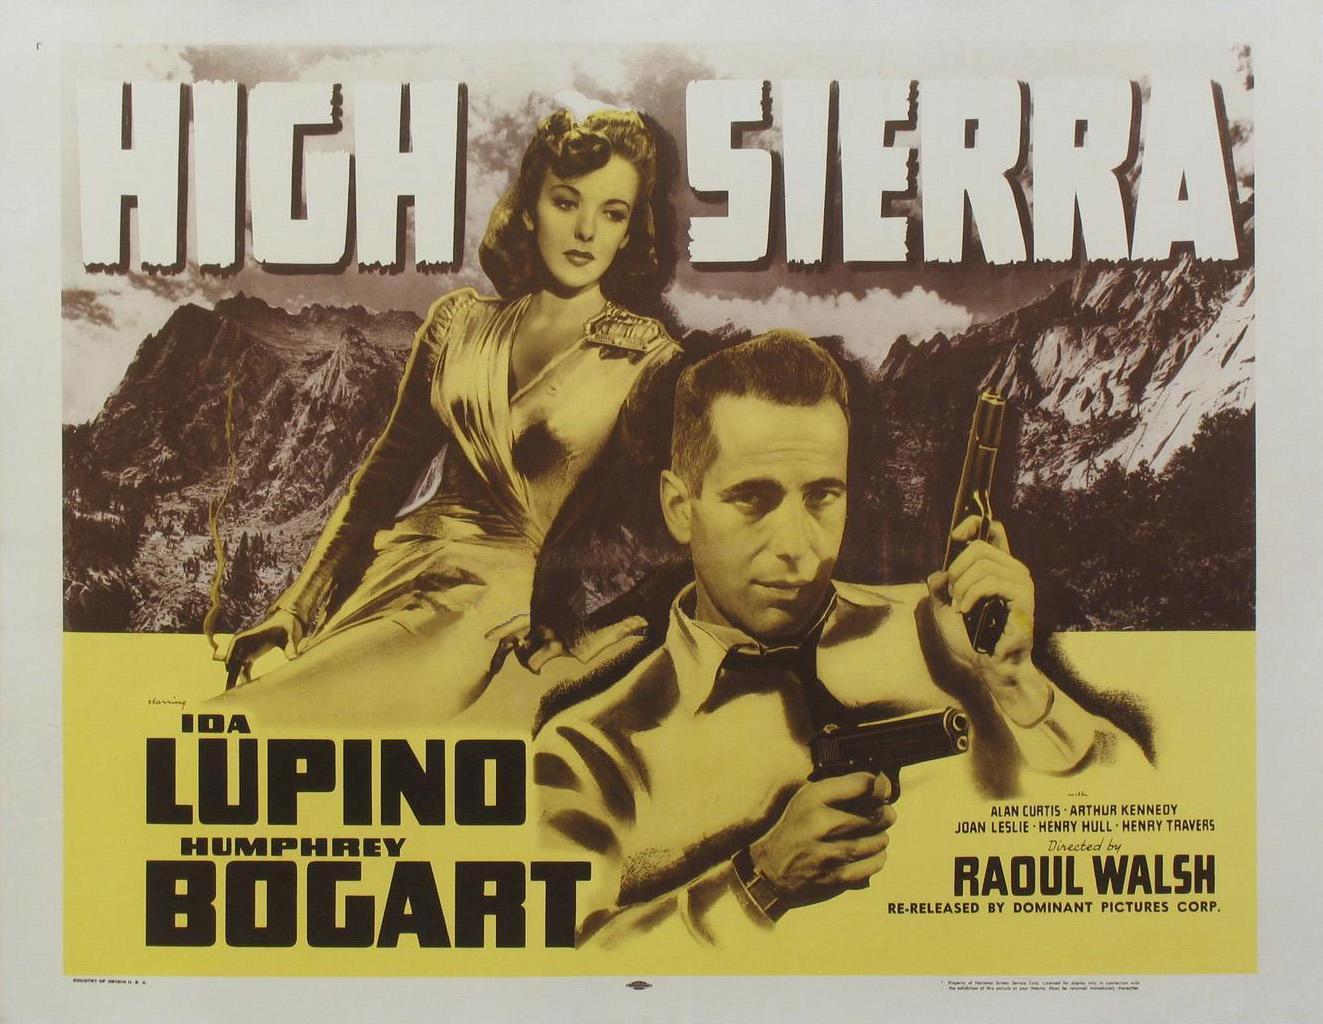 Постер фильма Высокая Сьерра | High Sierra